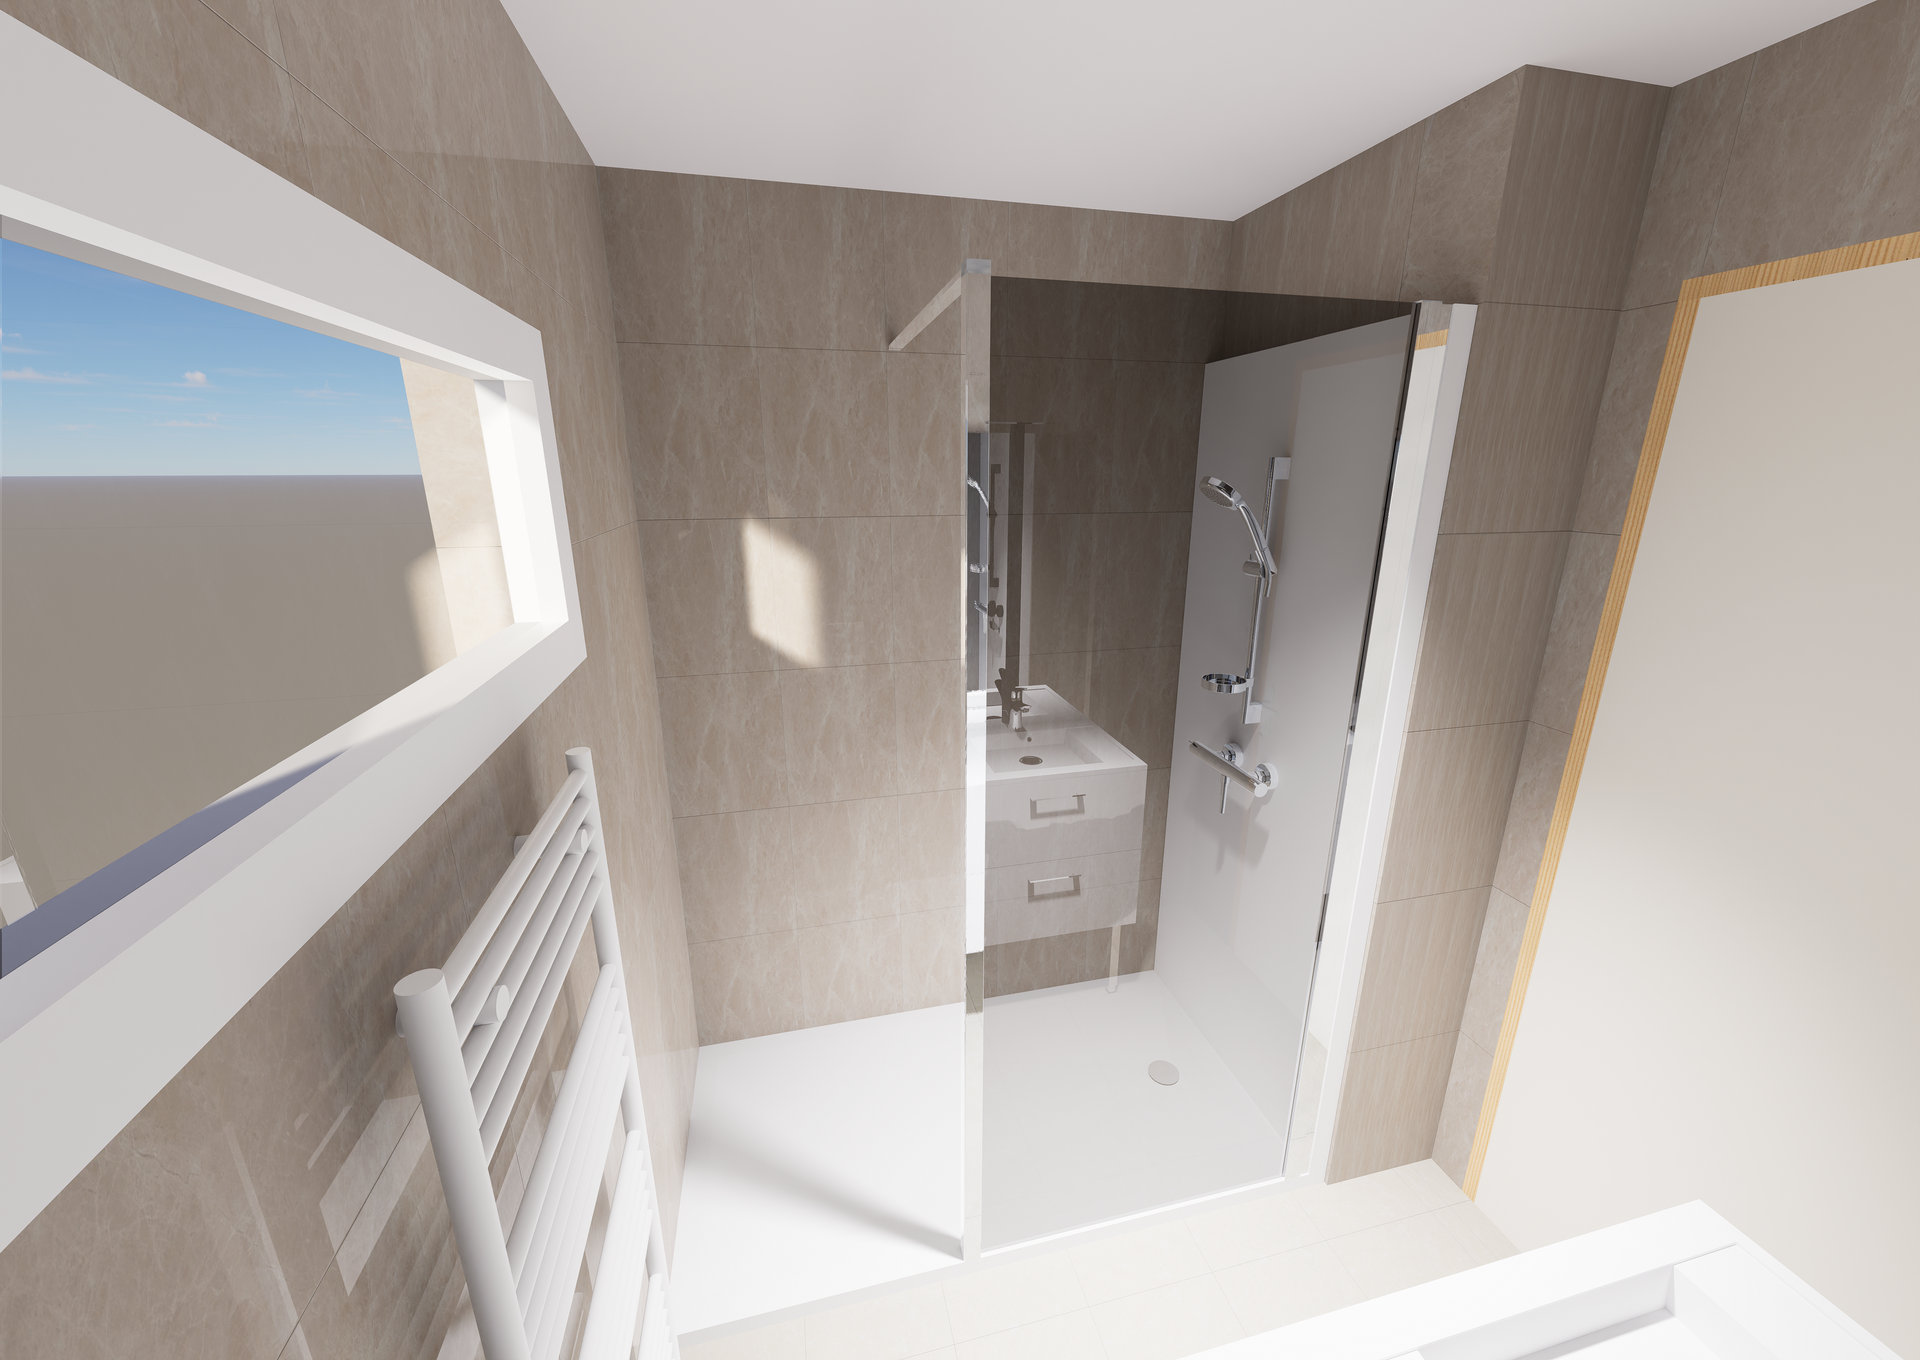 Plan 3D d'une salle de bains avec douche conçue par Douches Meyer & Fils